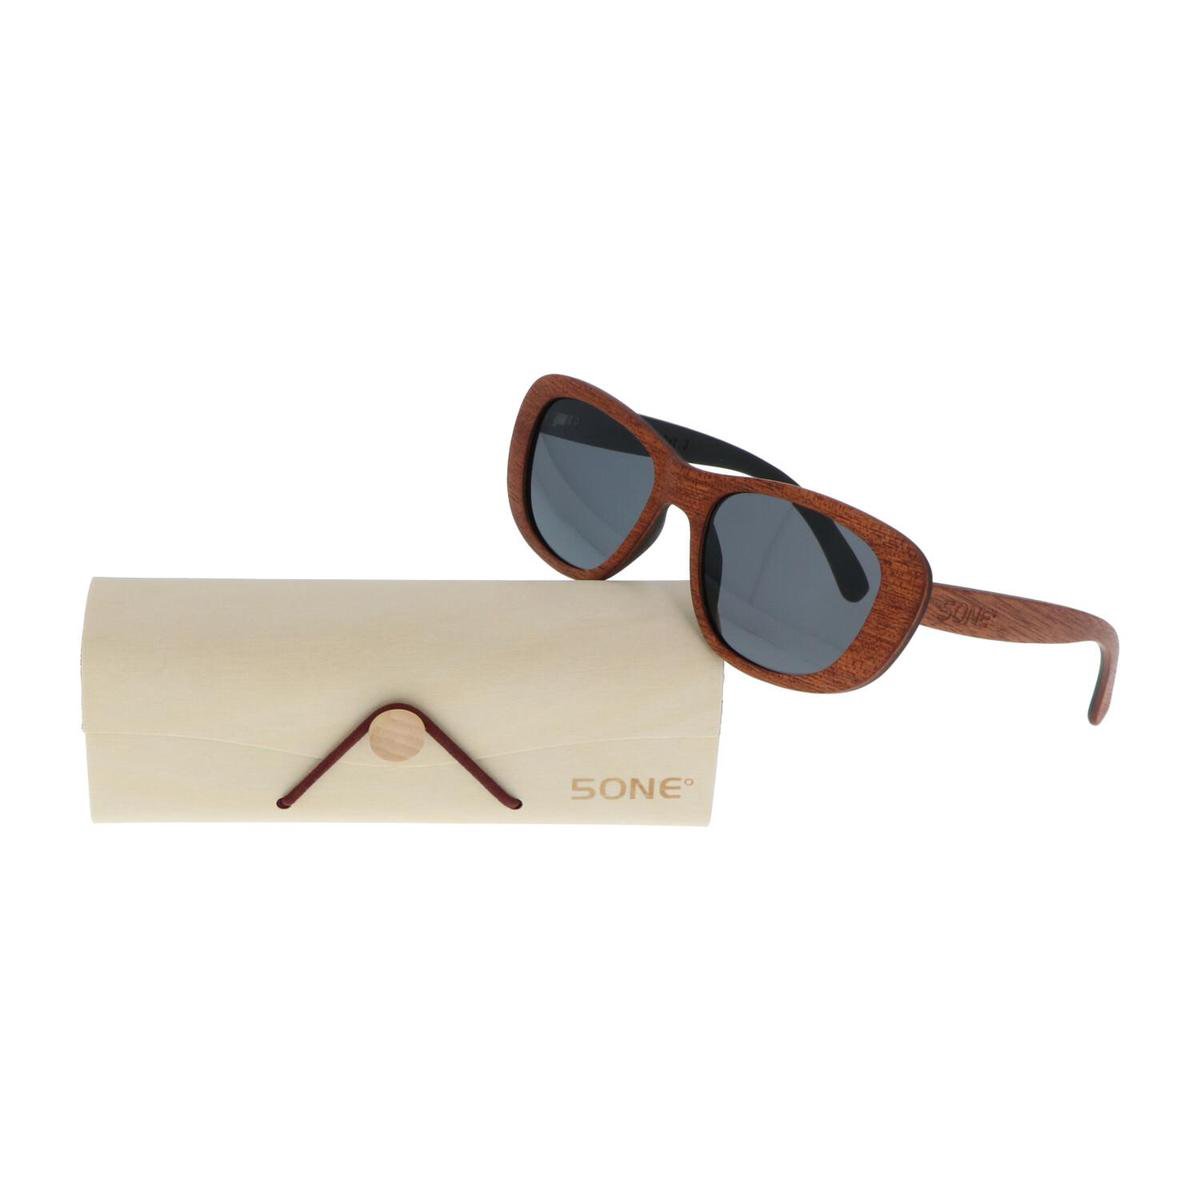 5one® Siena Brown - Sapeli houten Dames Zonnebril met grijze lens